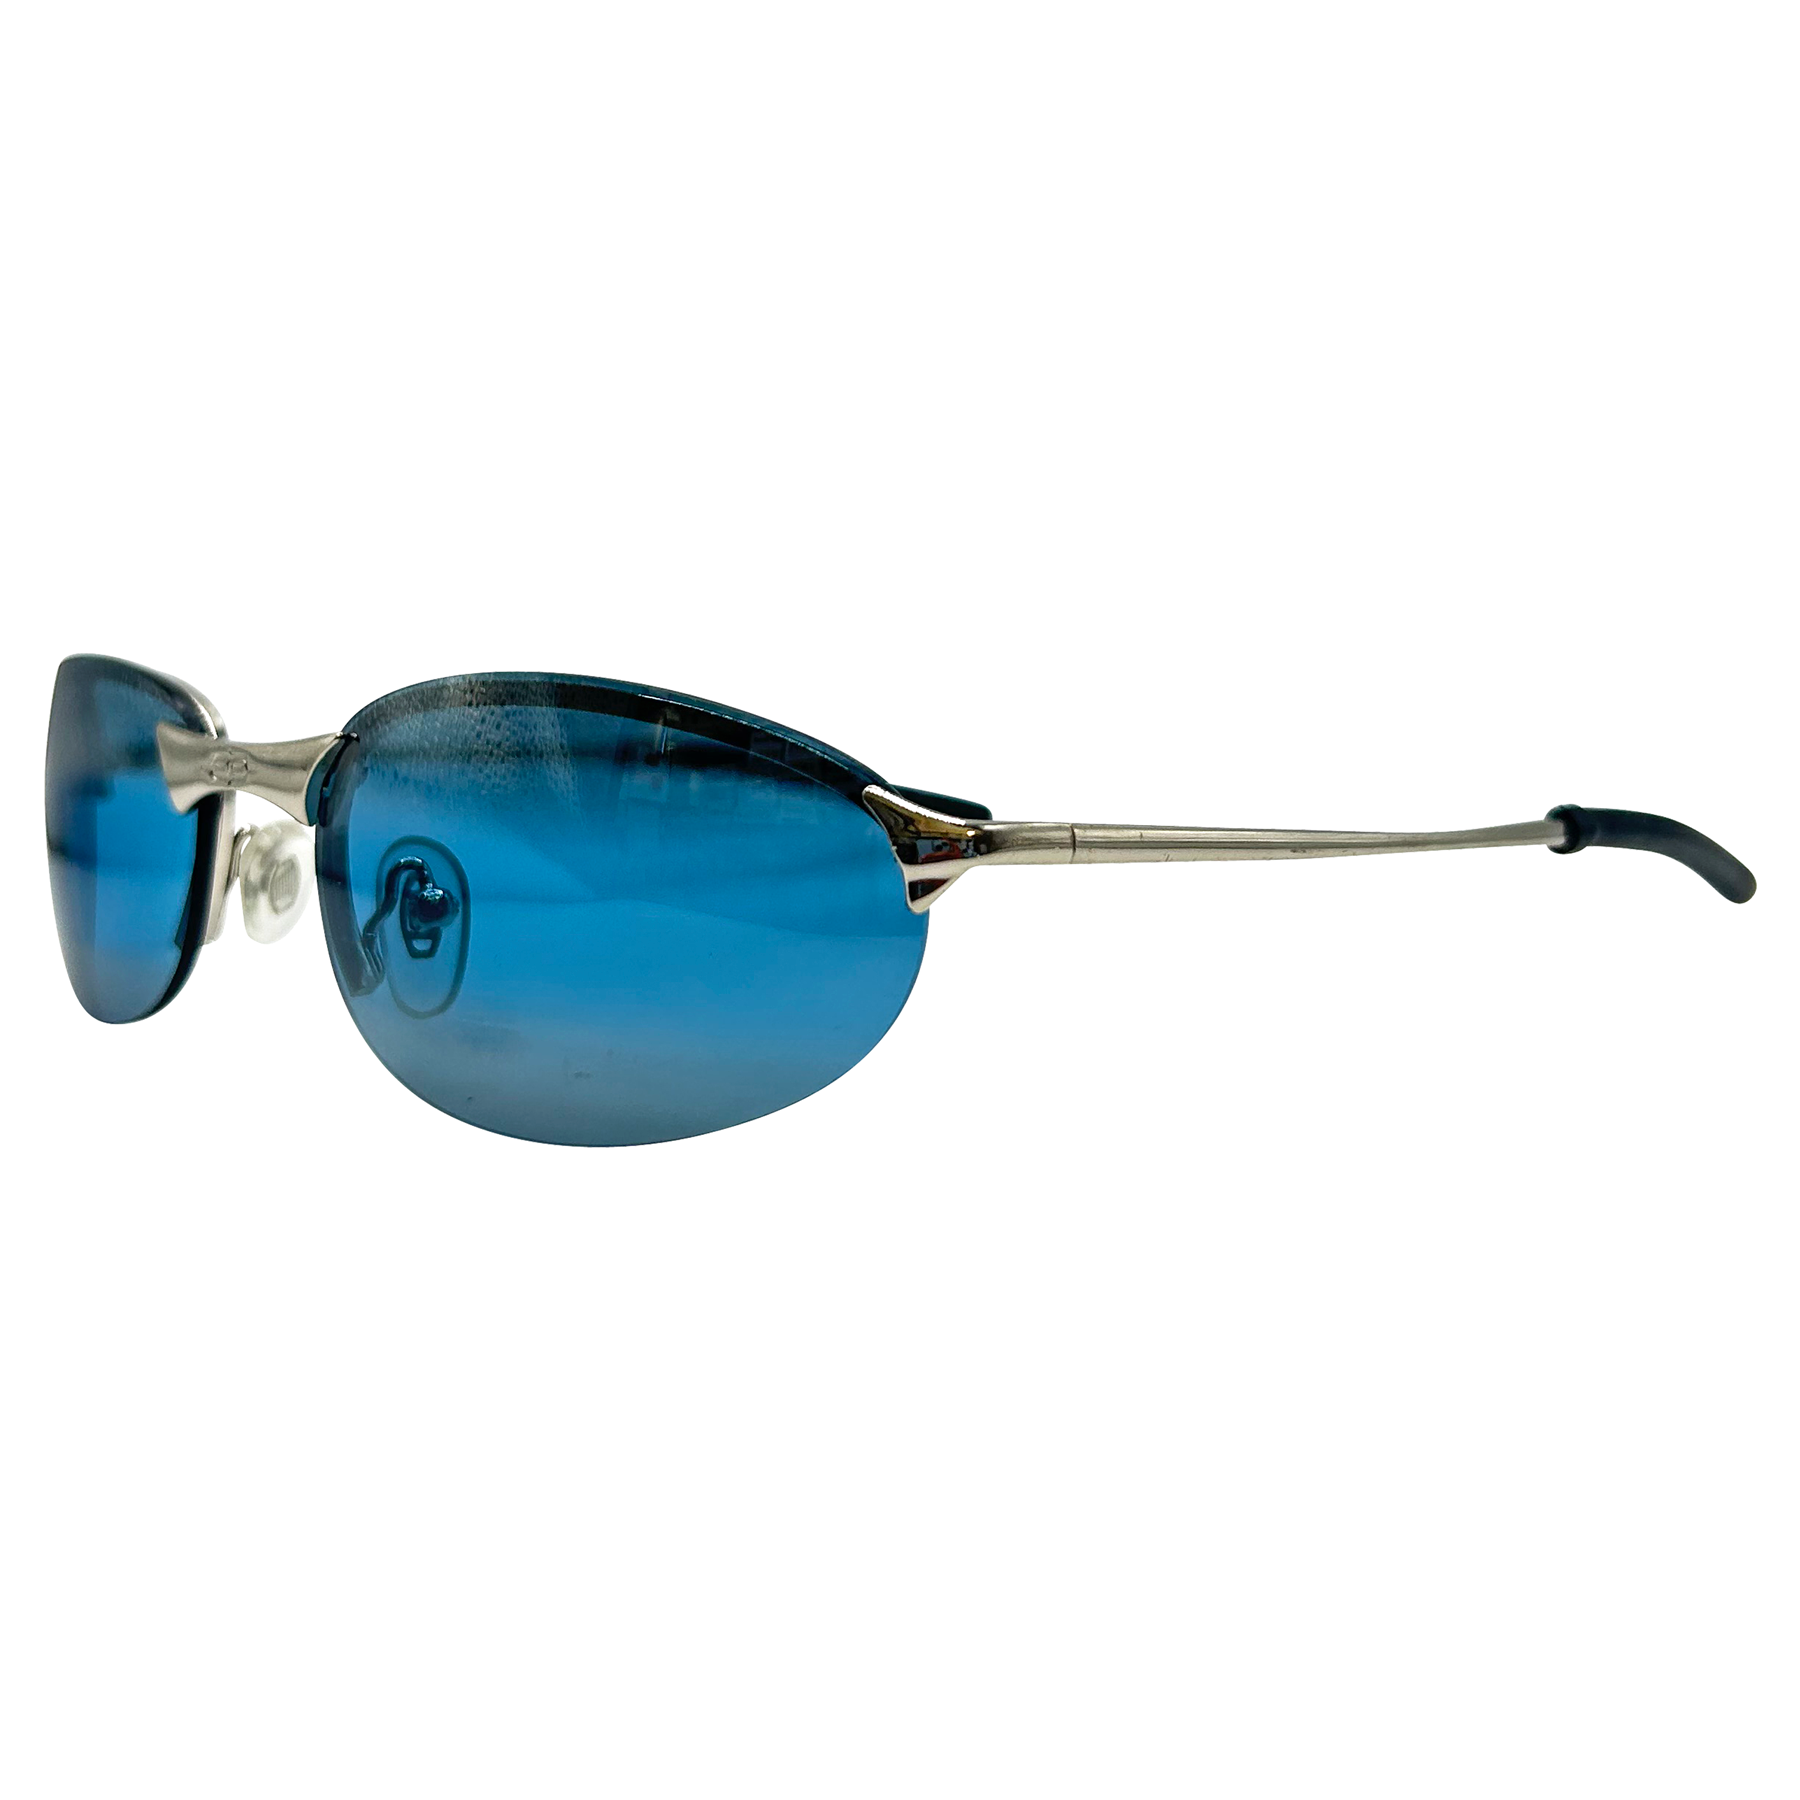 PENALTY 90s Streetwear Sunglasses